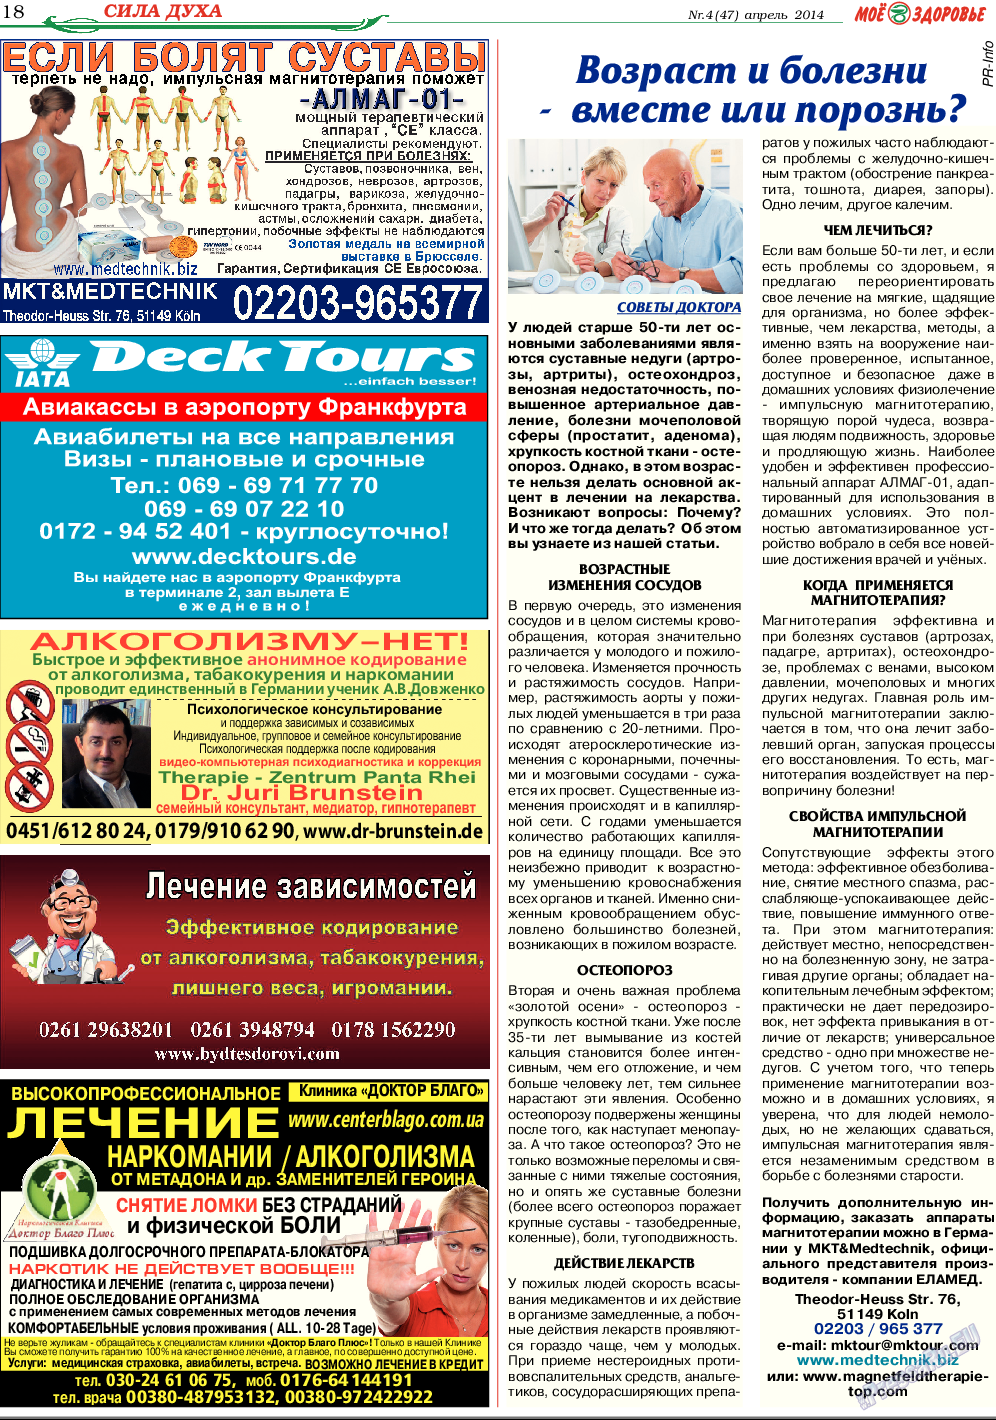 Кругозор, газета. 2014 №4 стр.18